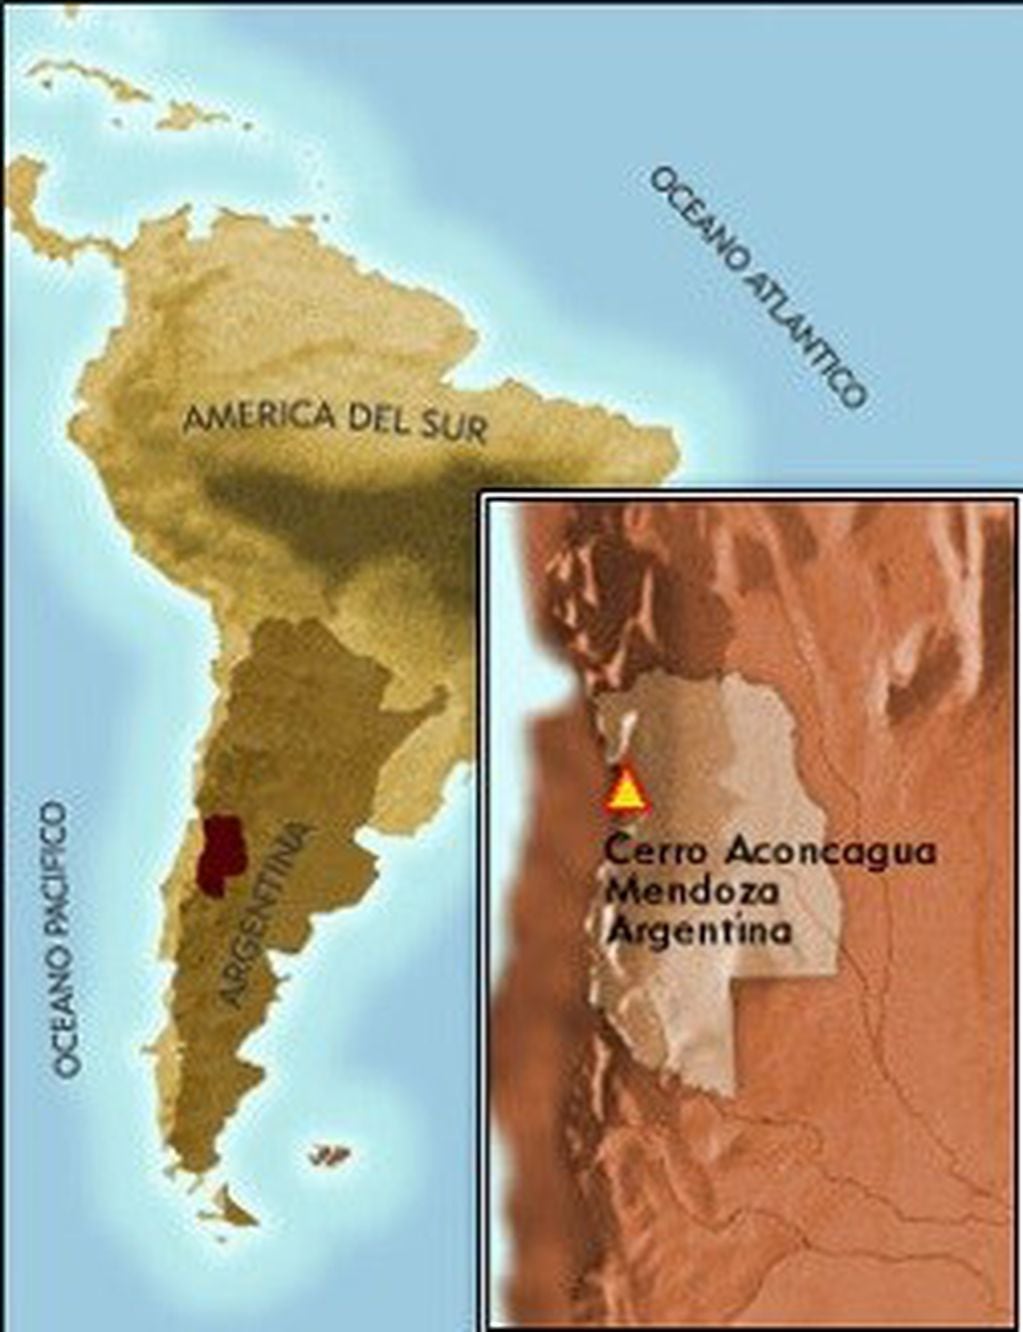 Ubicación geográfica del Cerro Aconcagua.